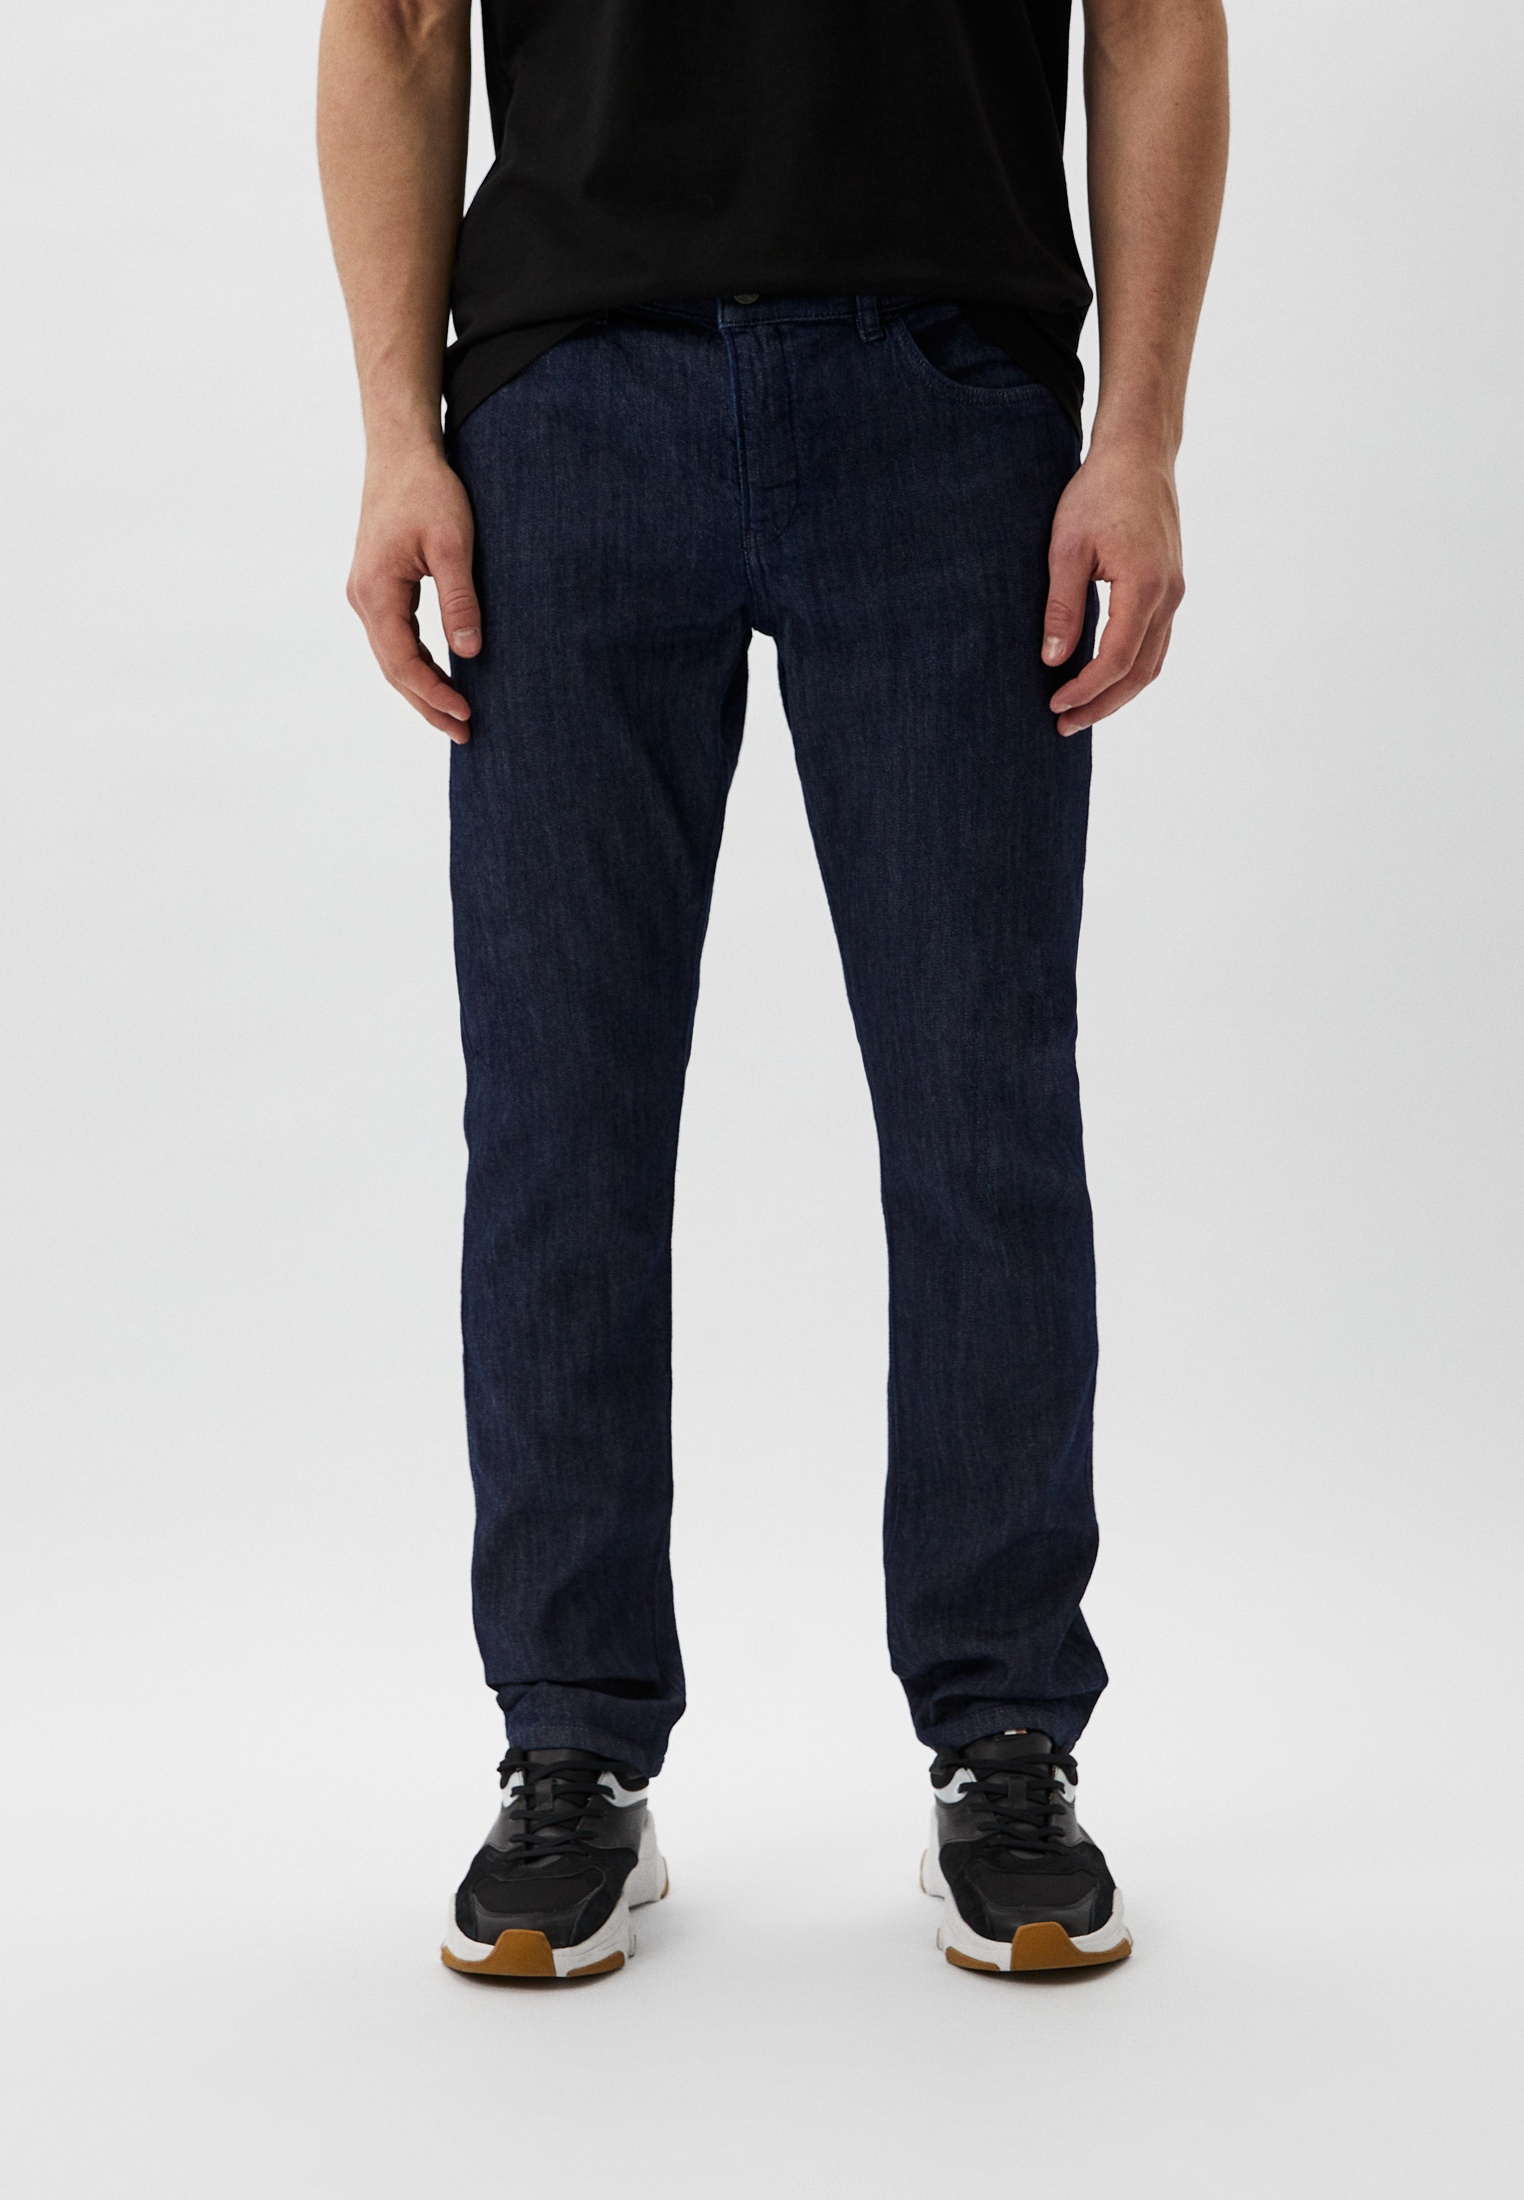 Мужские зауженные джинсы Boss (Босс) 50509404: изображение 1